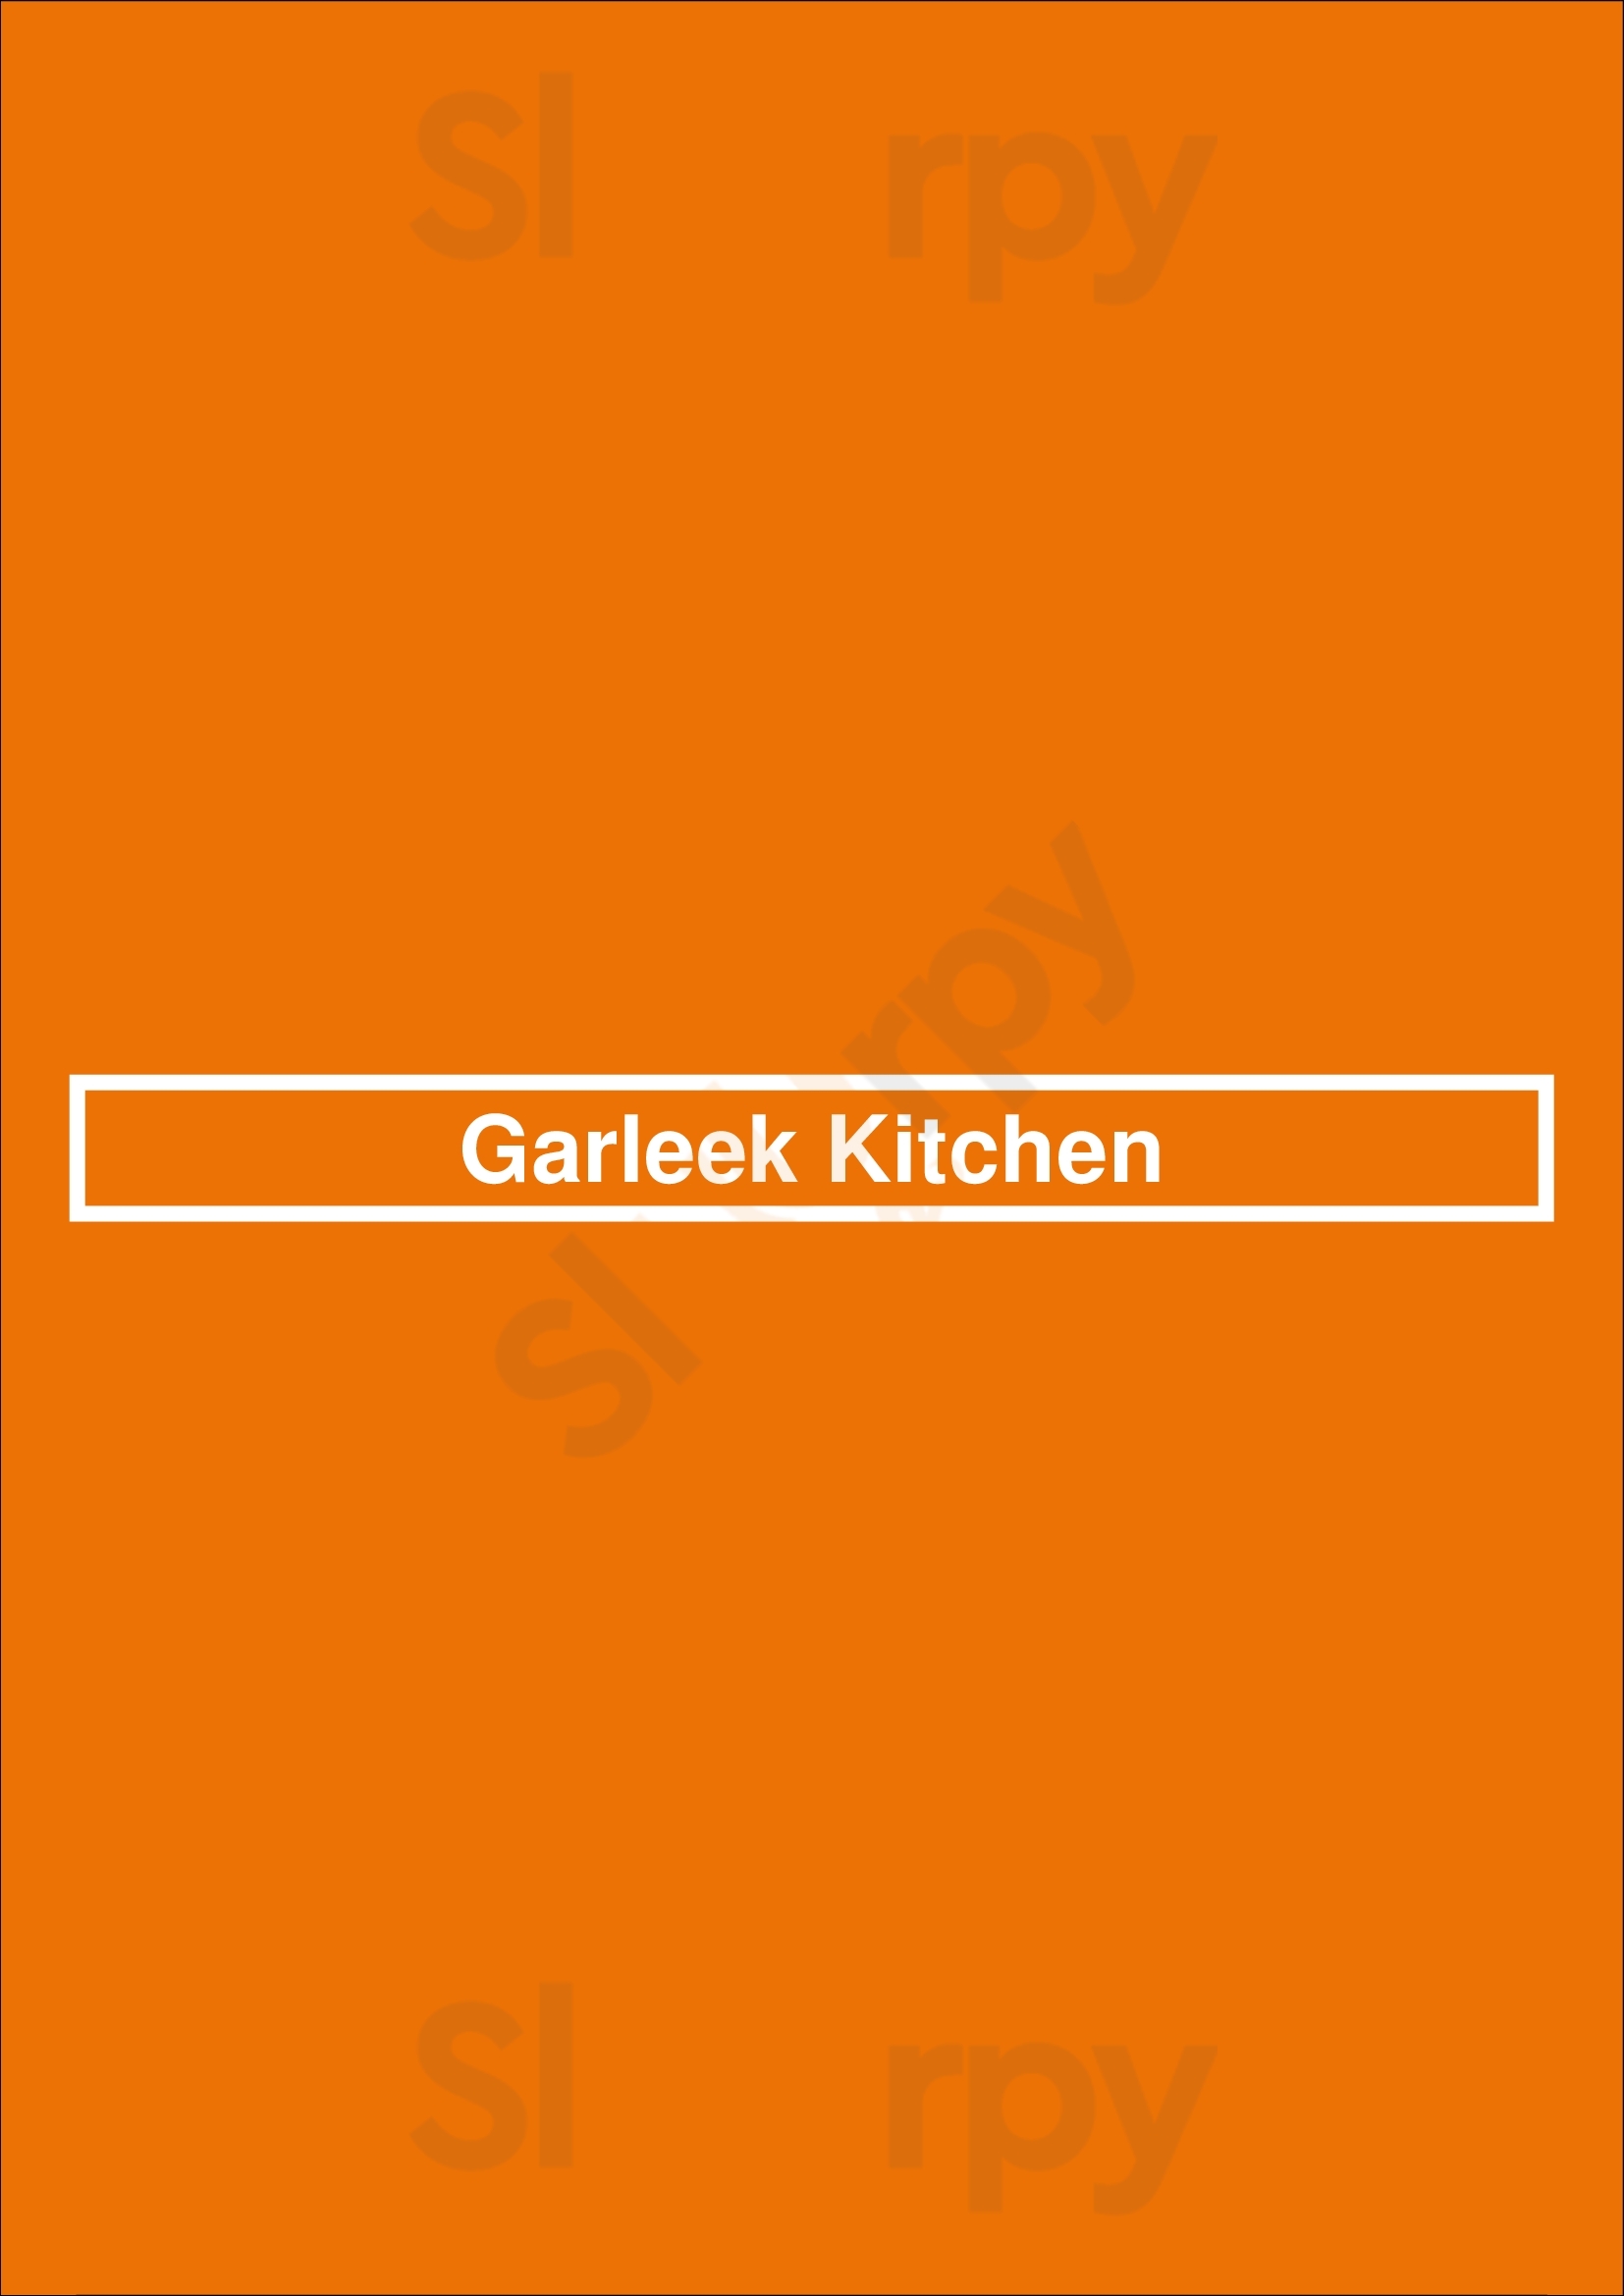 Garleek Kitchen Toronto Menu - 1